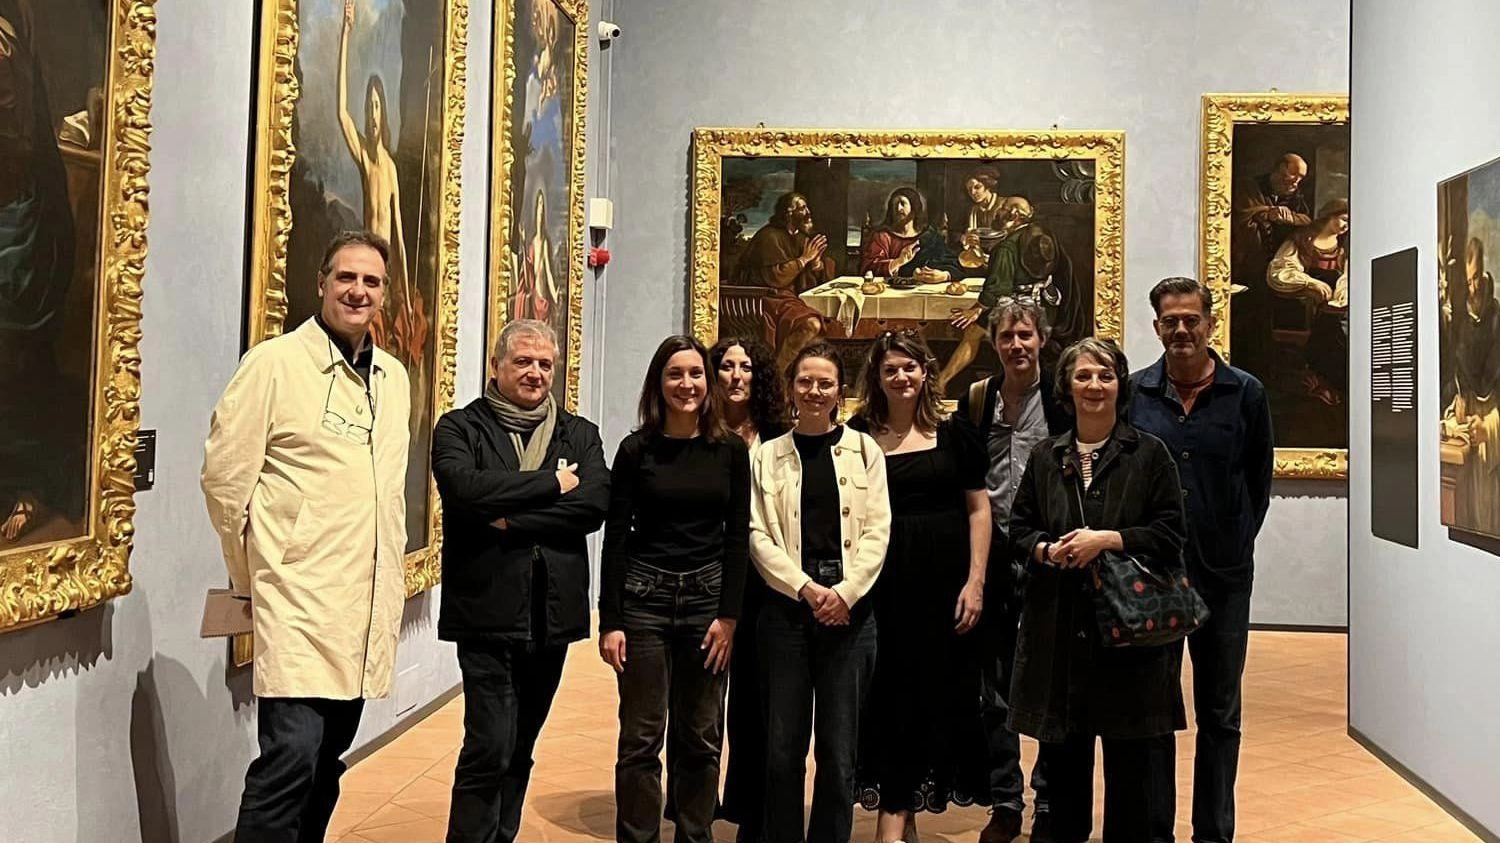 Una speciale convenzione che unisce Cento, Piacenza e Torino, che porterà più turisti a visitare il Guercino